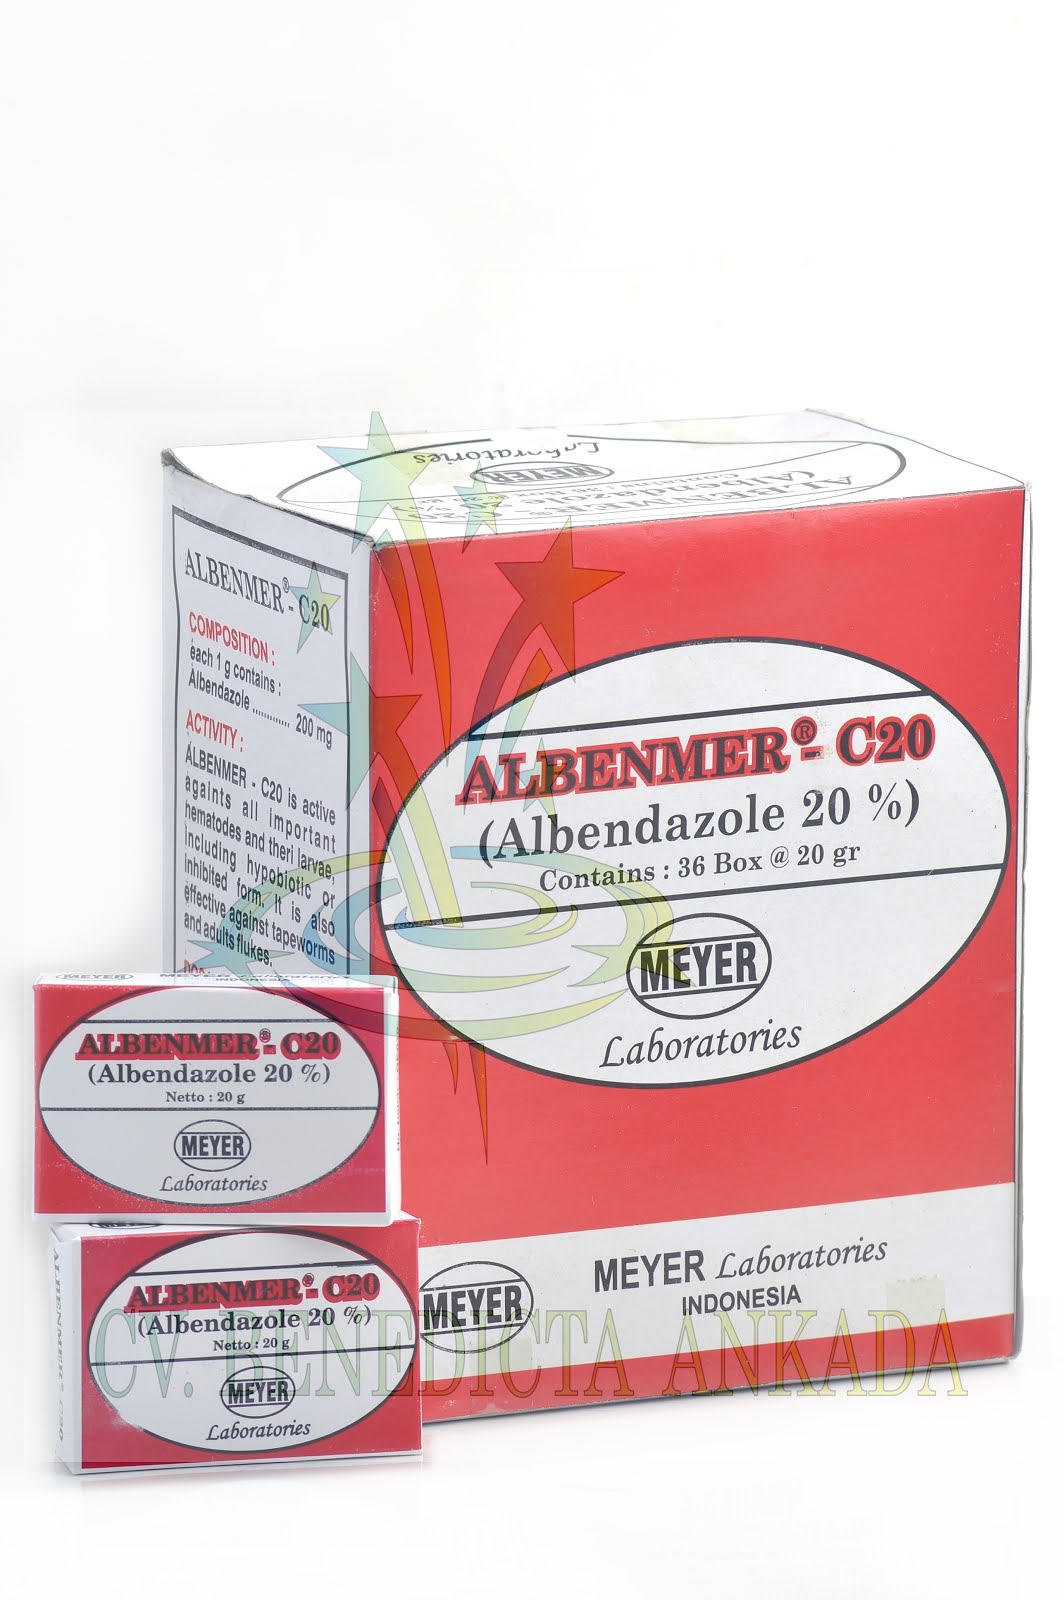 ALBENMER C.20 - MEYER